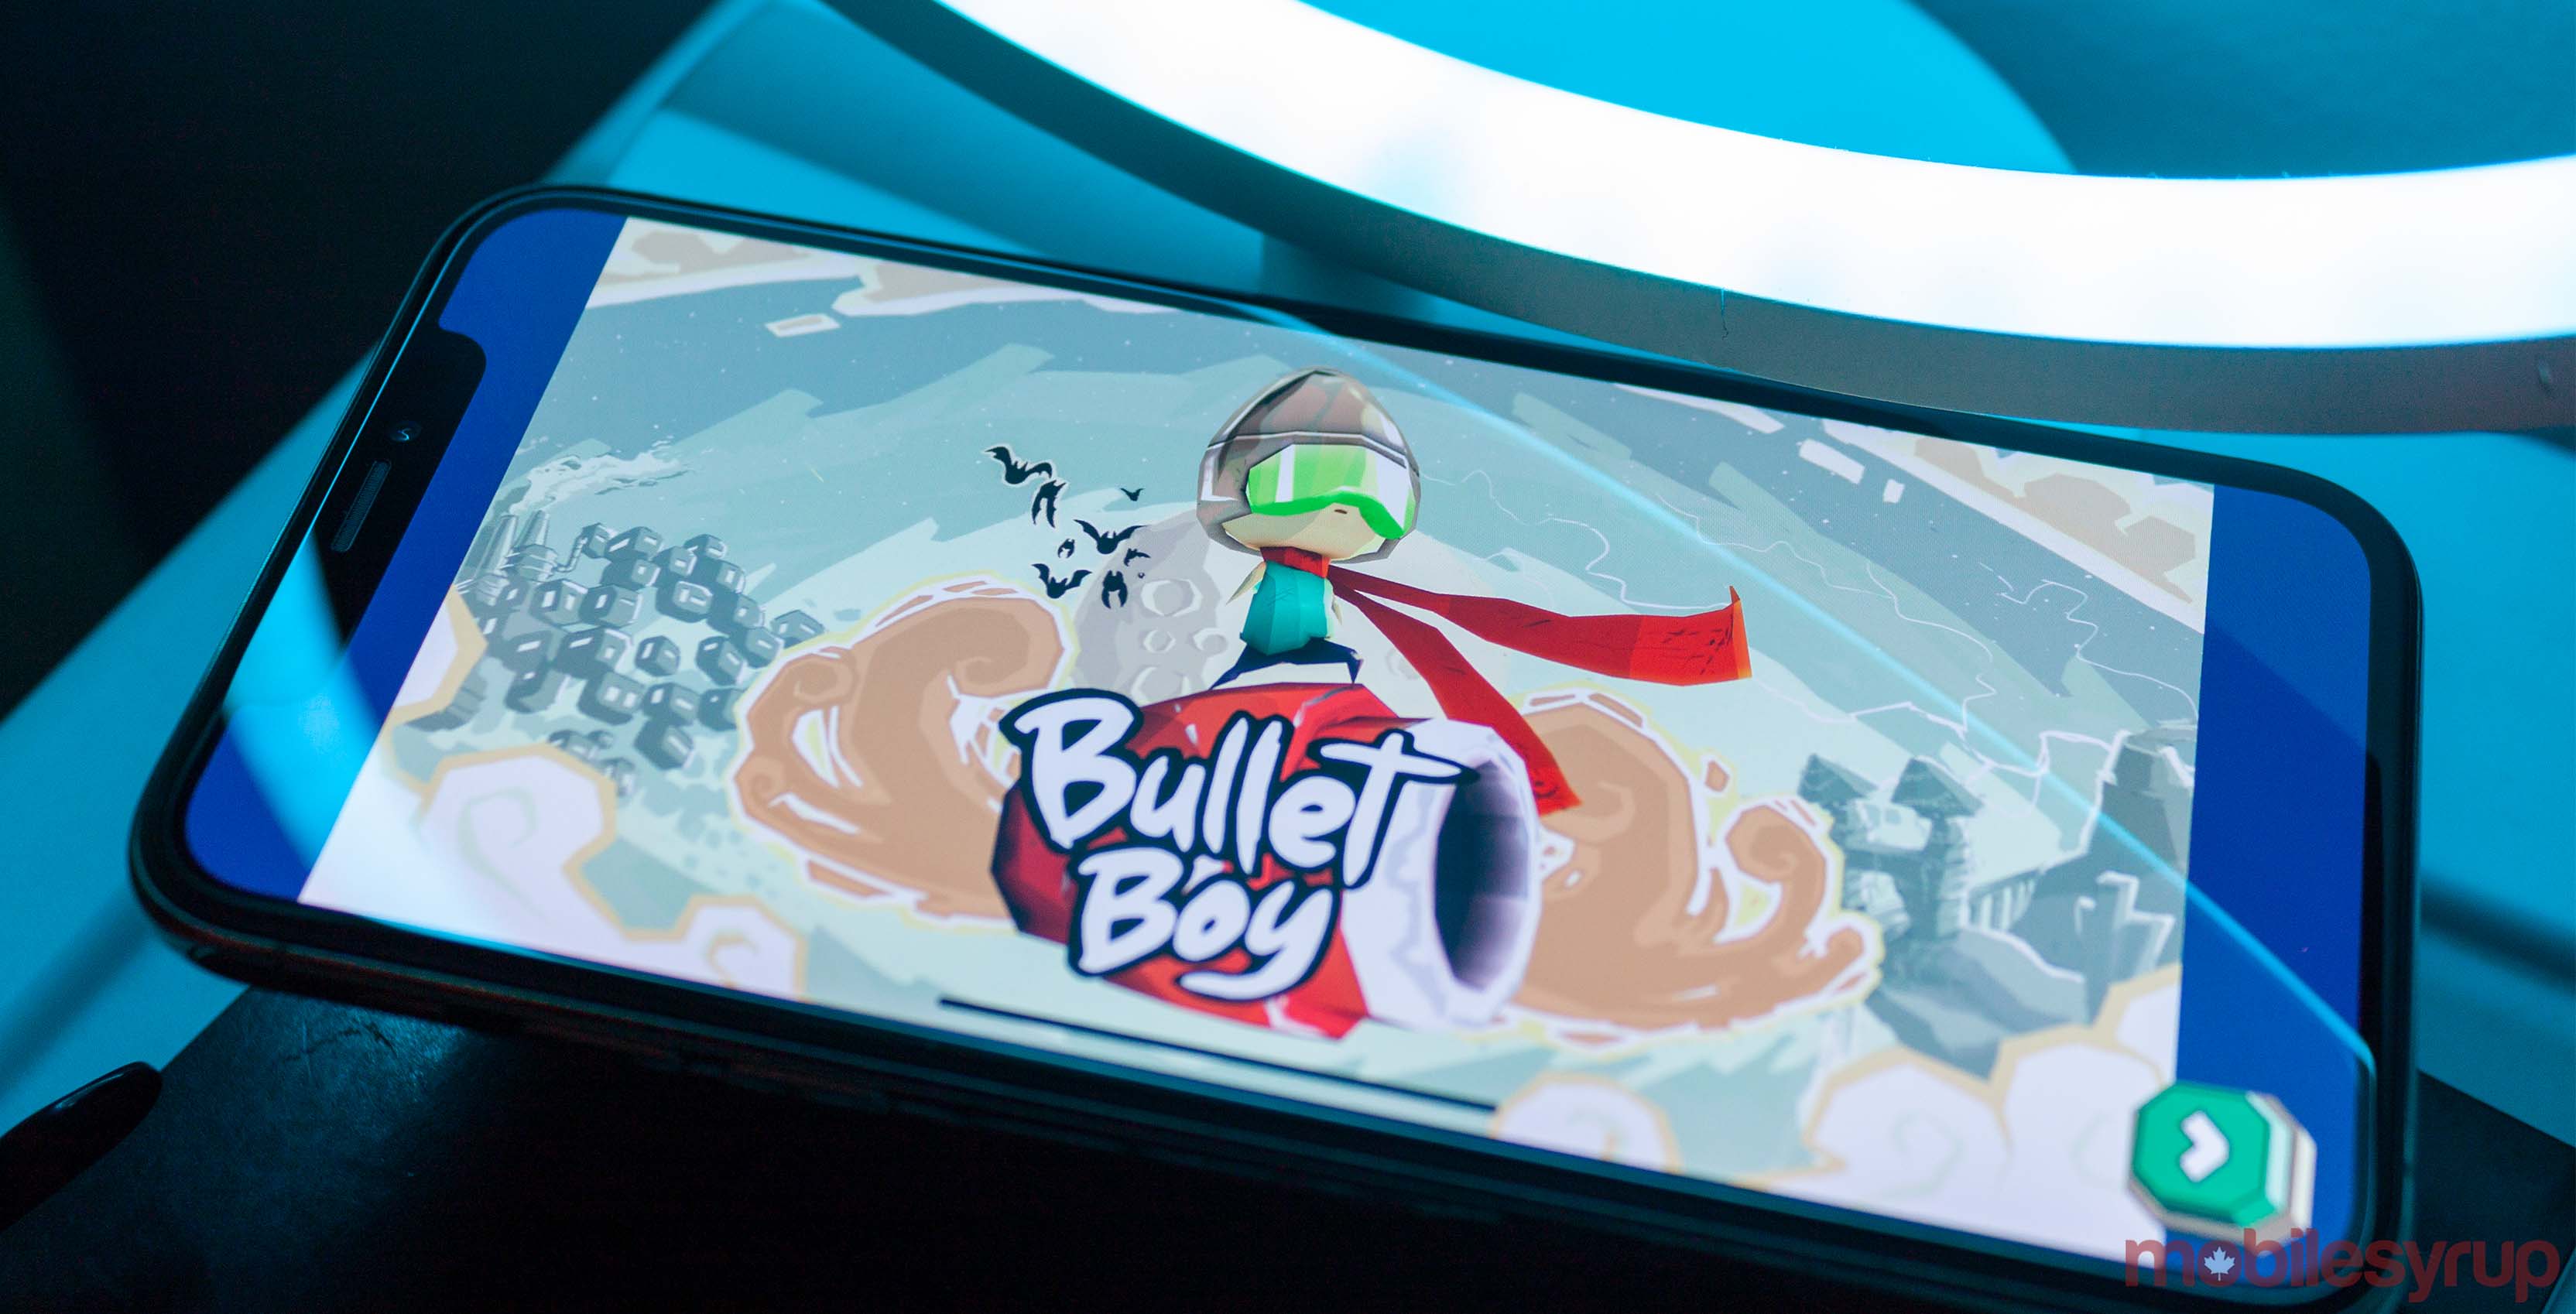 Bullet Boy loading screen